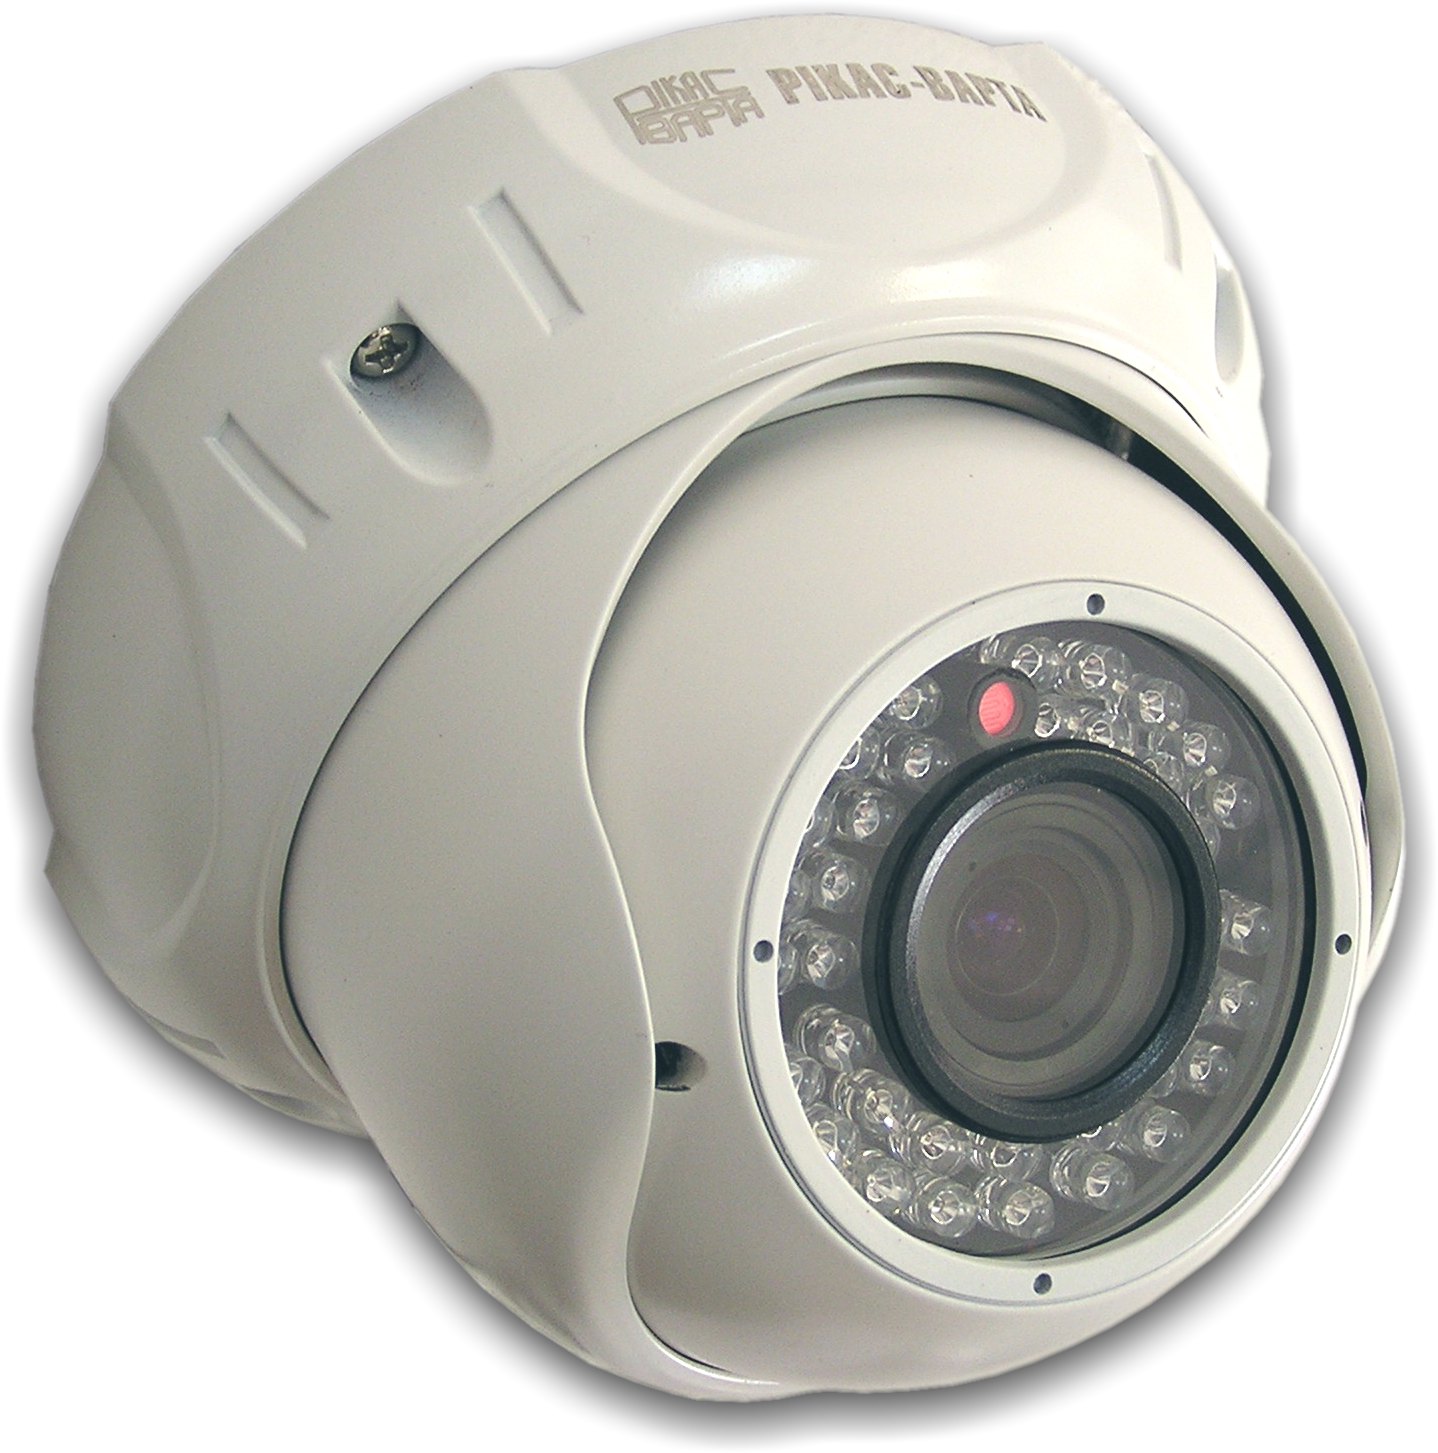 IP камеры видеонаблюдения серии HVB-DVP:
 - антивандальные
 - уличные, герметичные
 - с ИК подсветкой
 - "день-ночь"